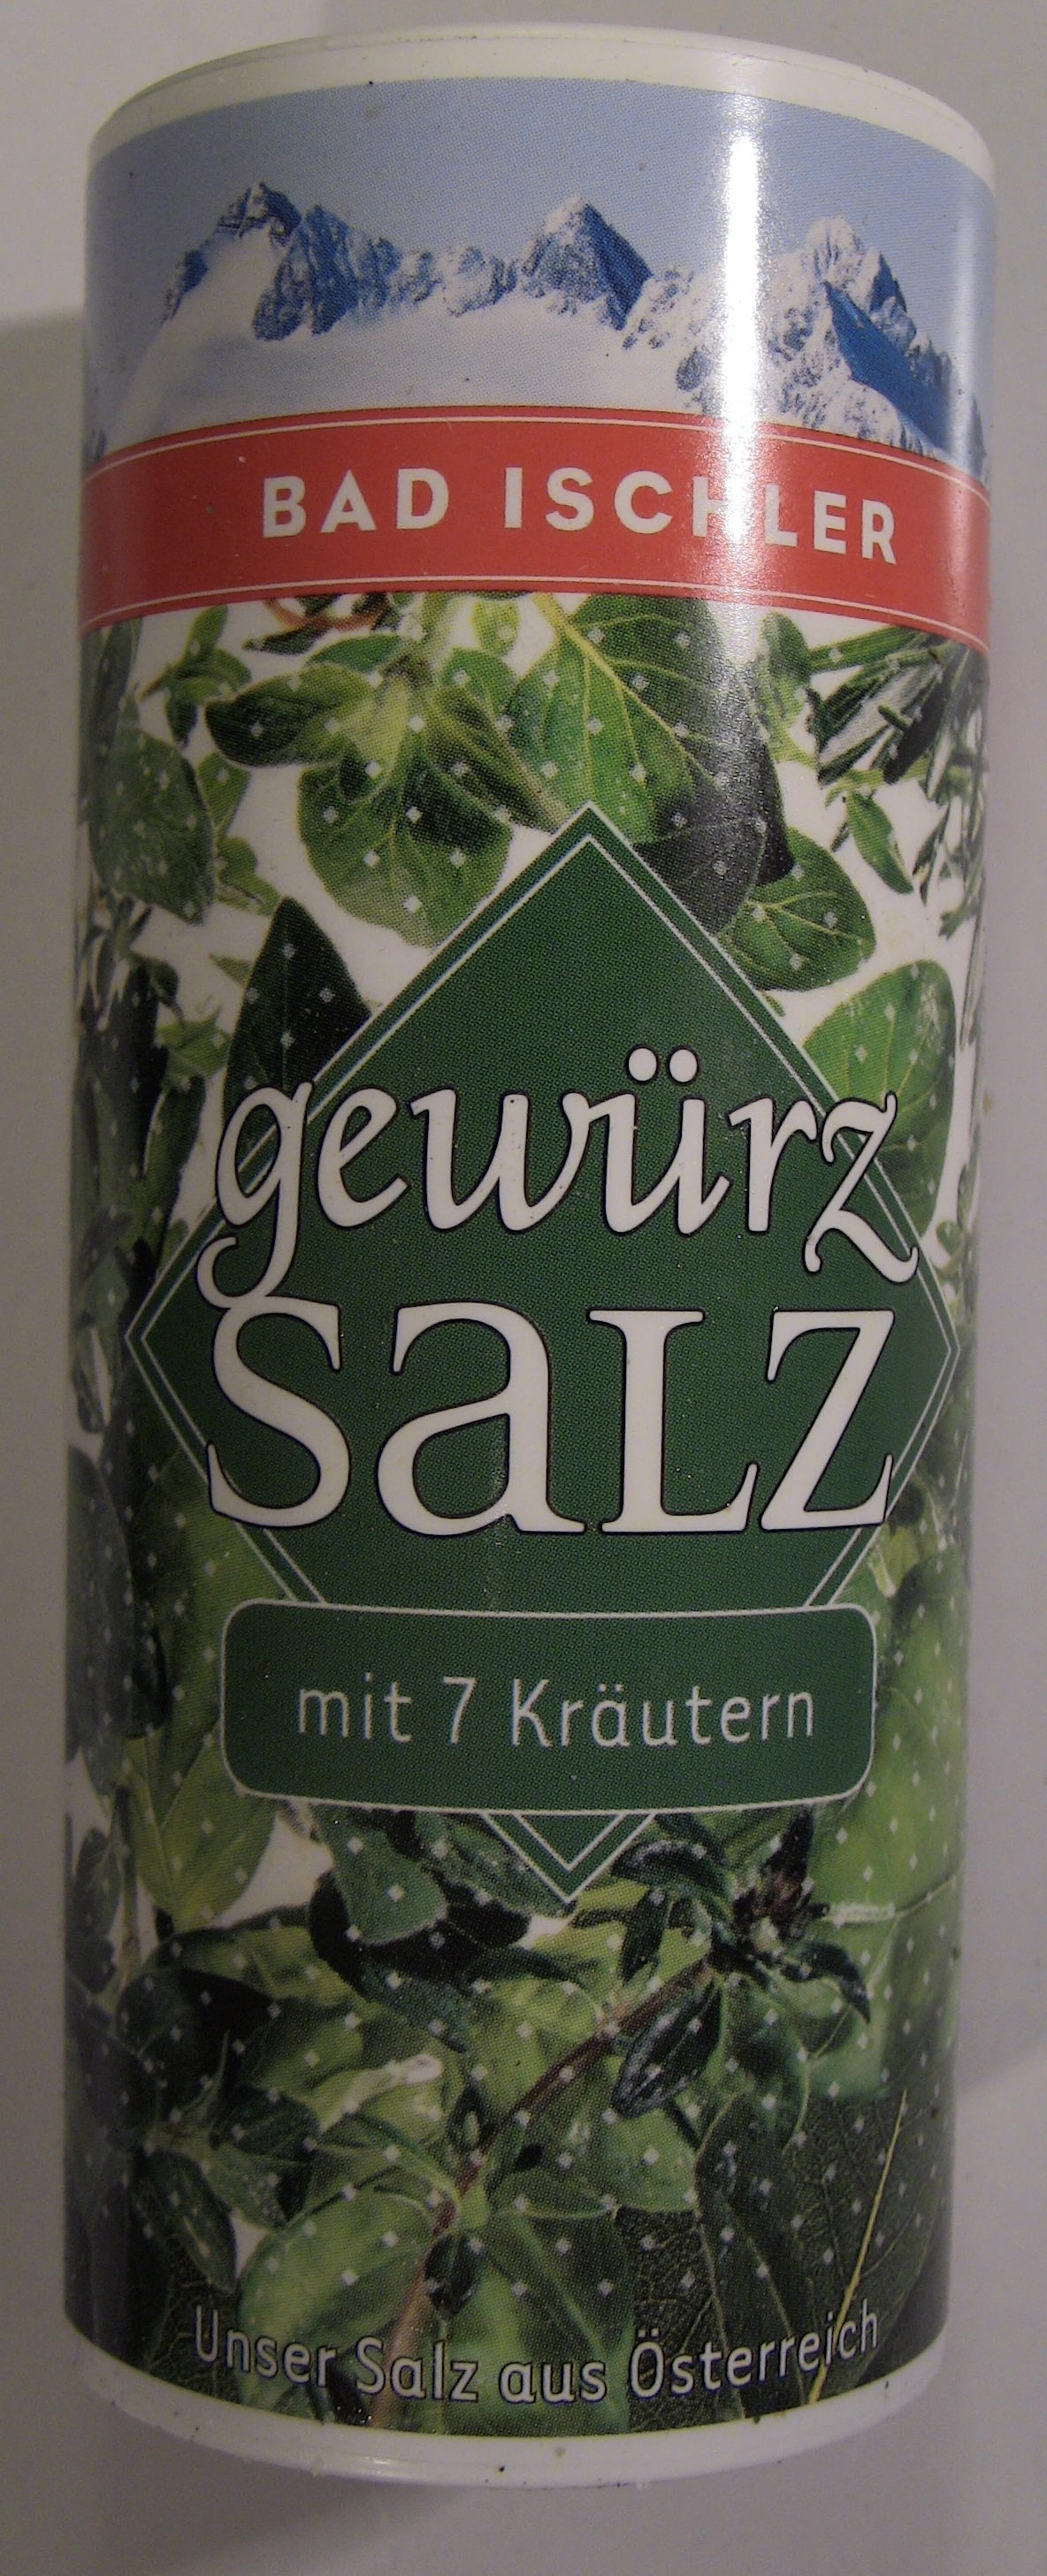 Bad Ischler Gewürzsalz mit 7 Kräutern - Produkt